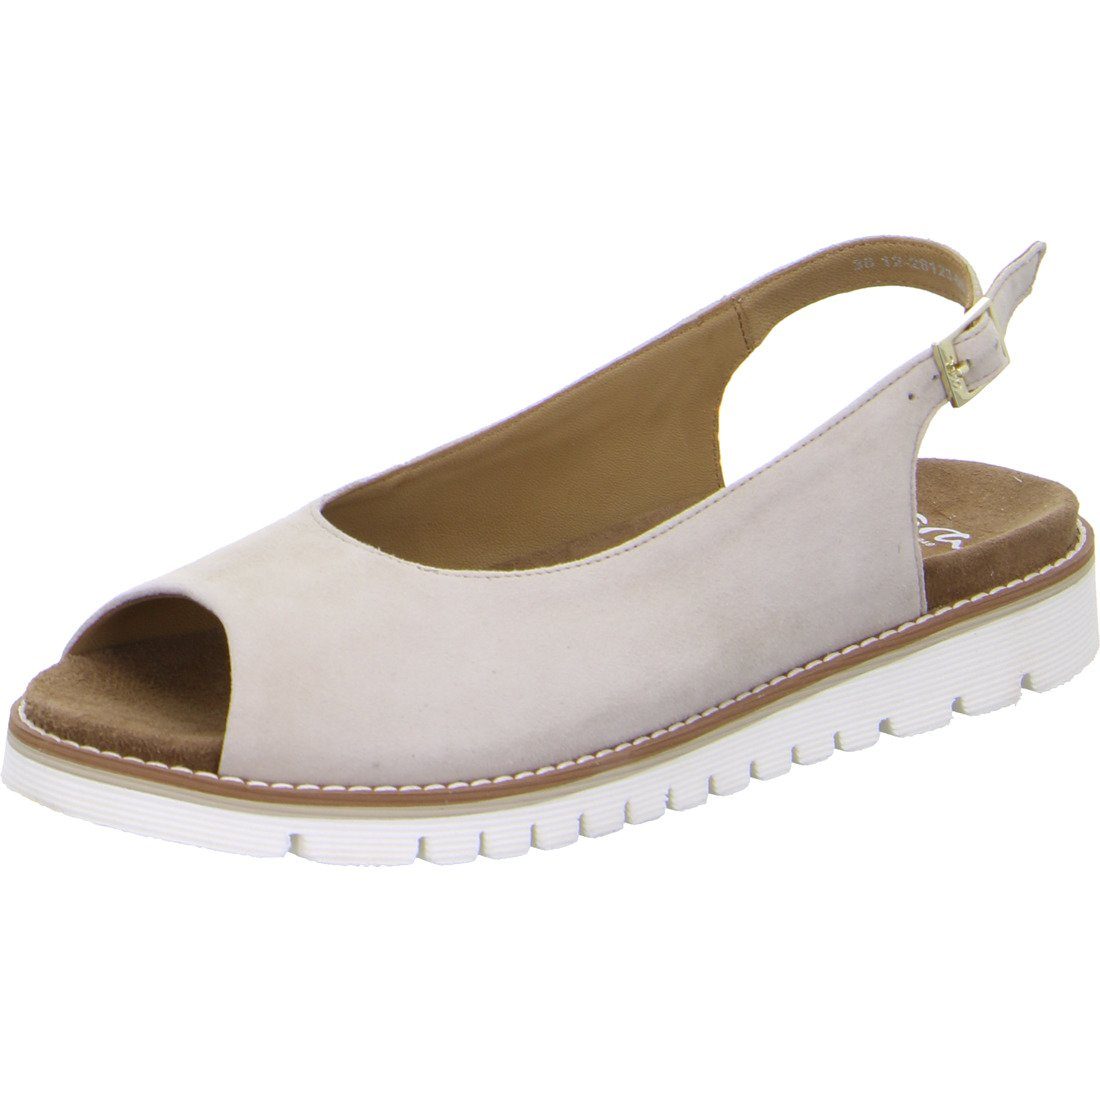 Ara Ara Glattleder Sandalette beige Kent-Sport Sandalette 048030 Schuhe, 